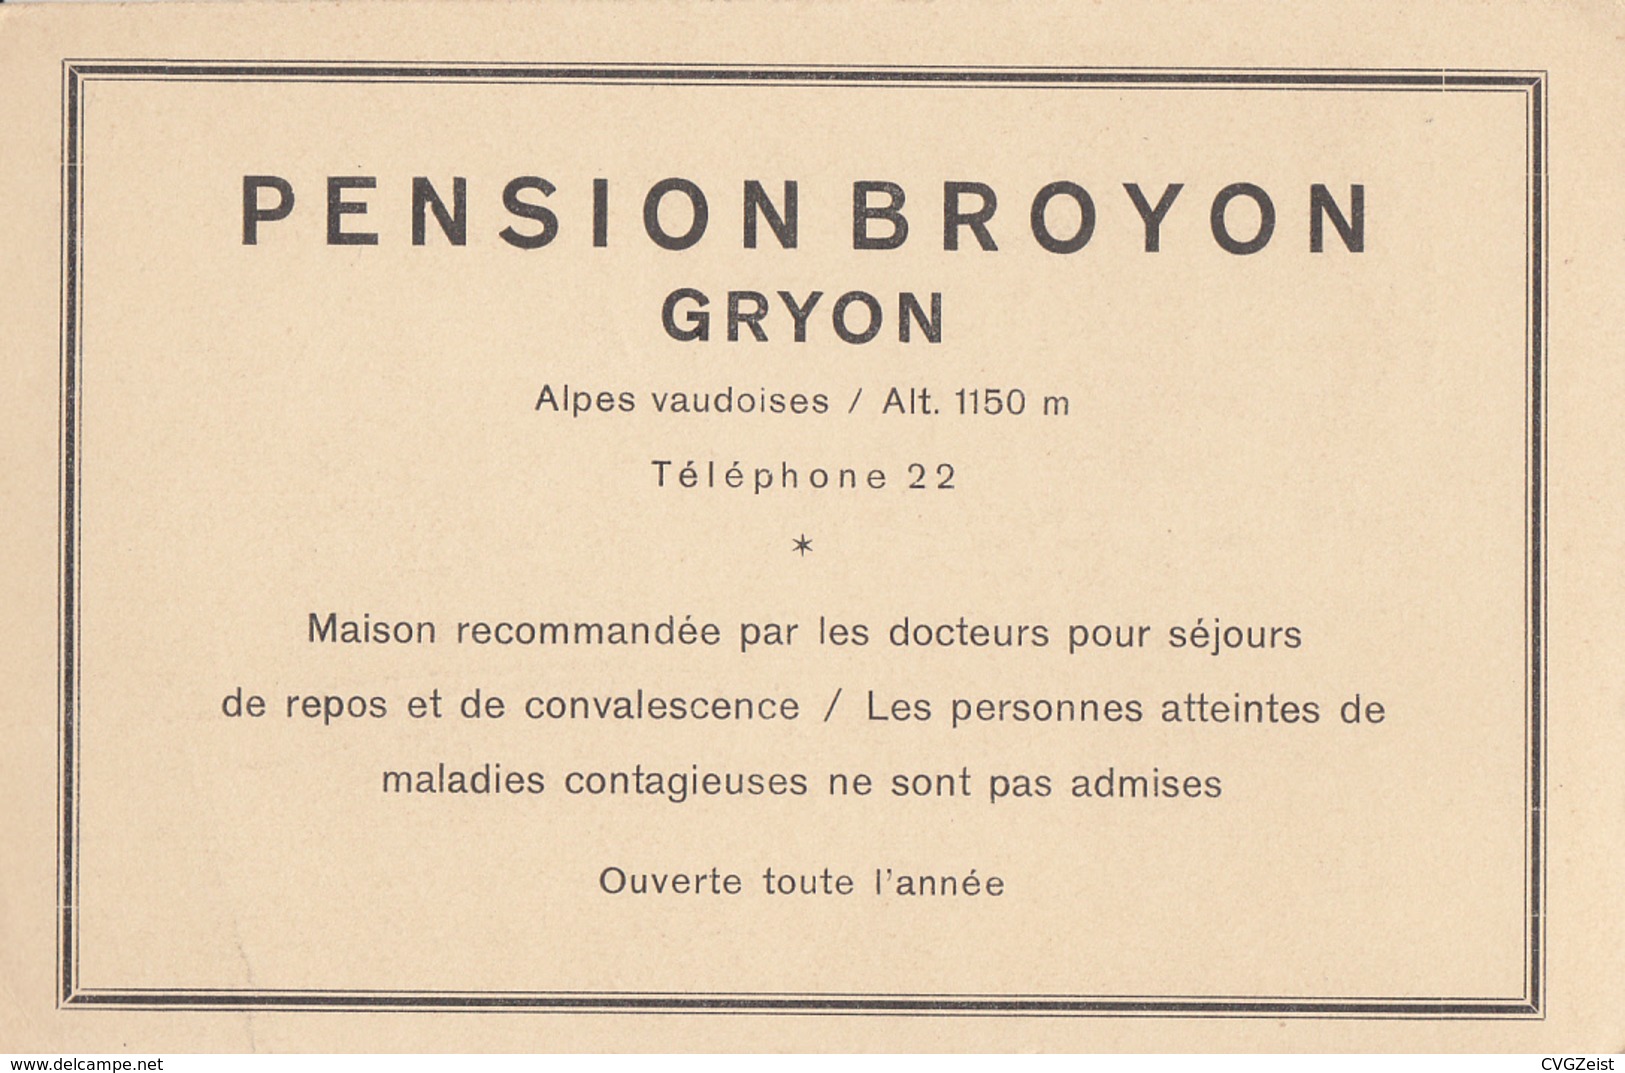 Pension Broyon Gryon - Gryon